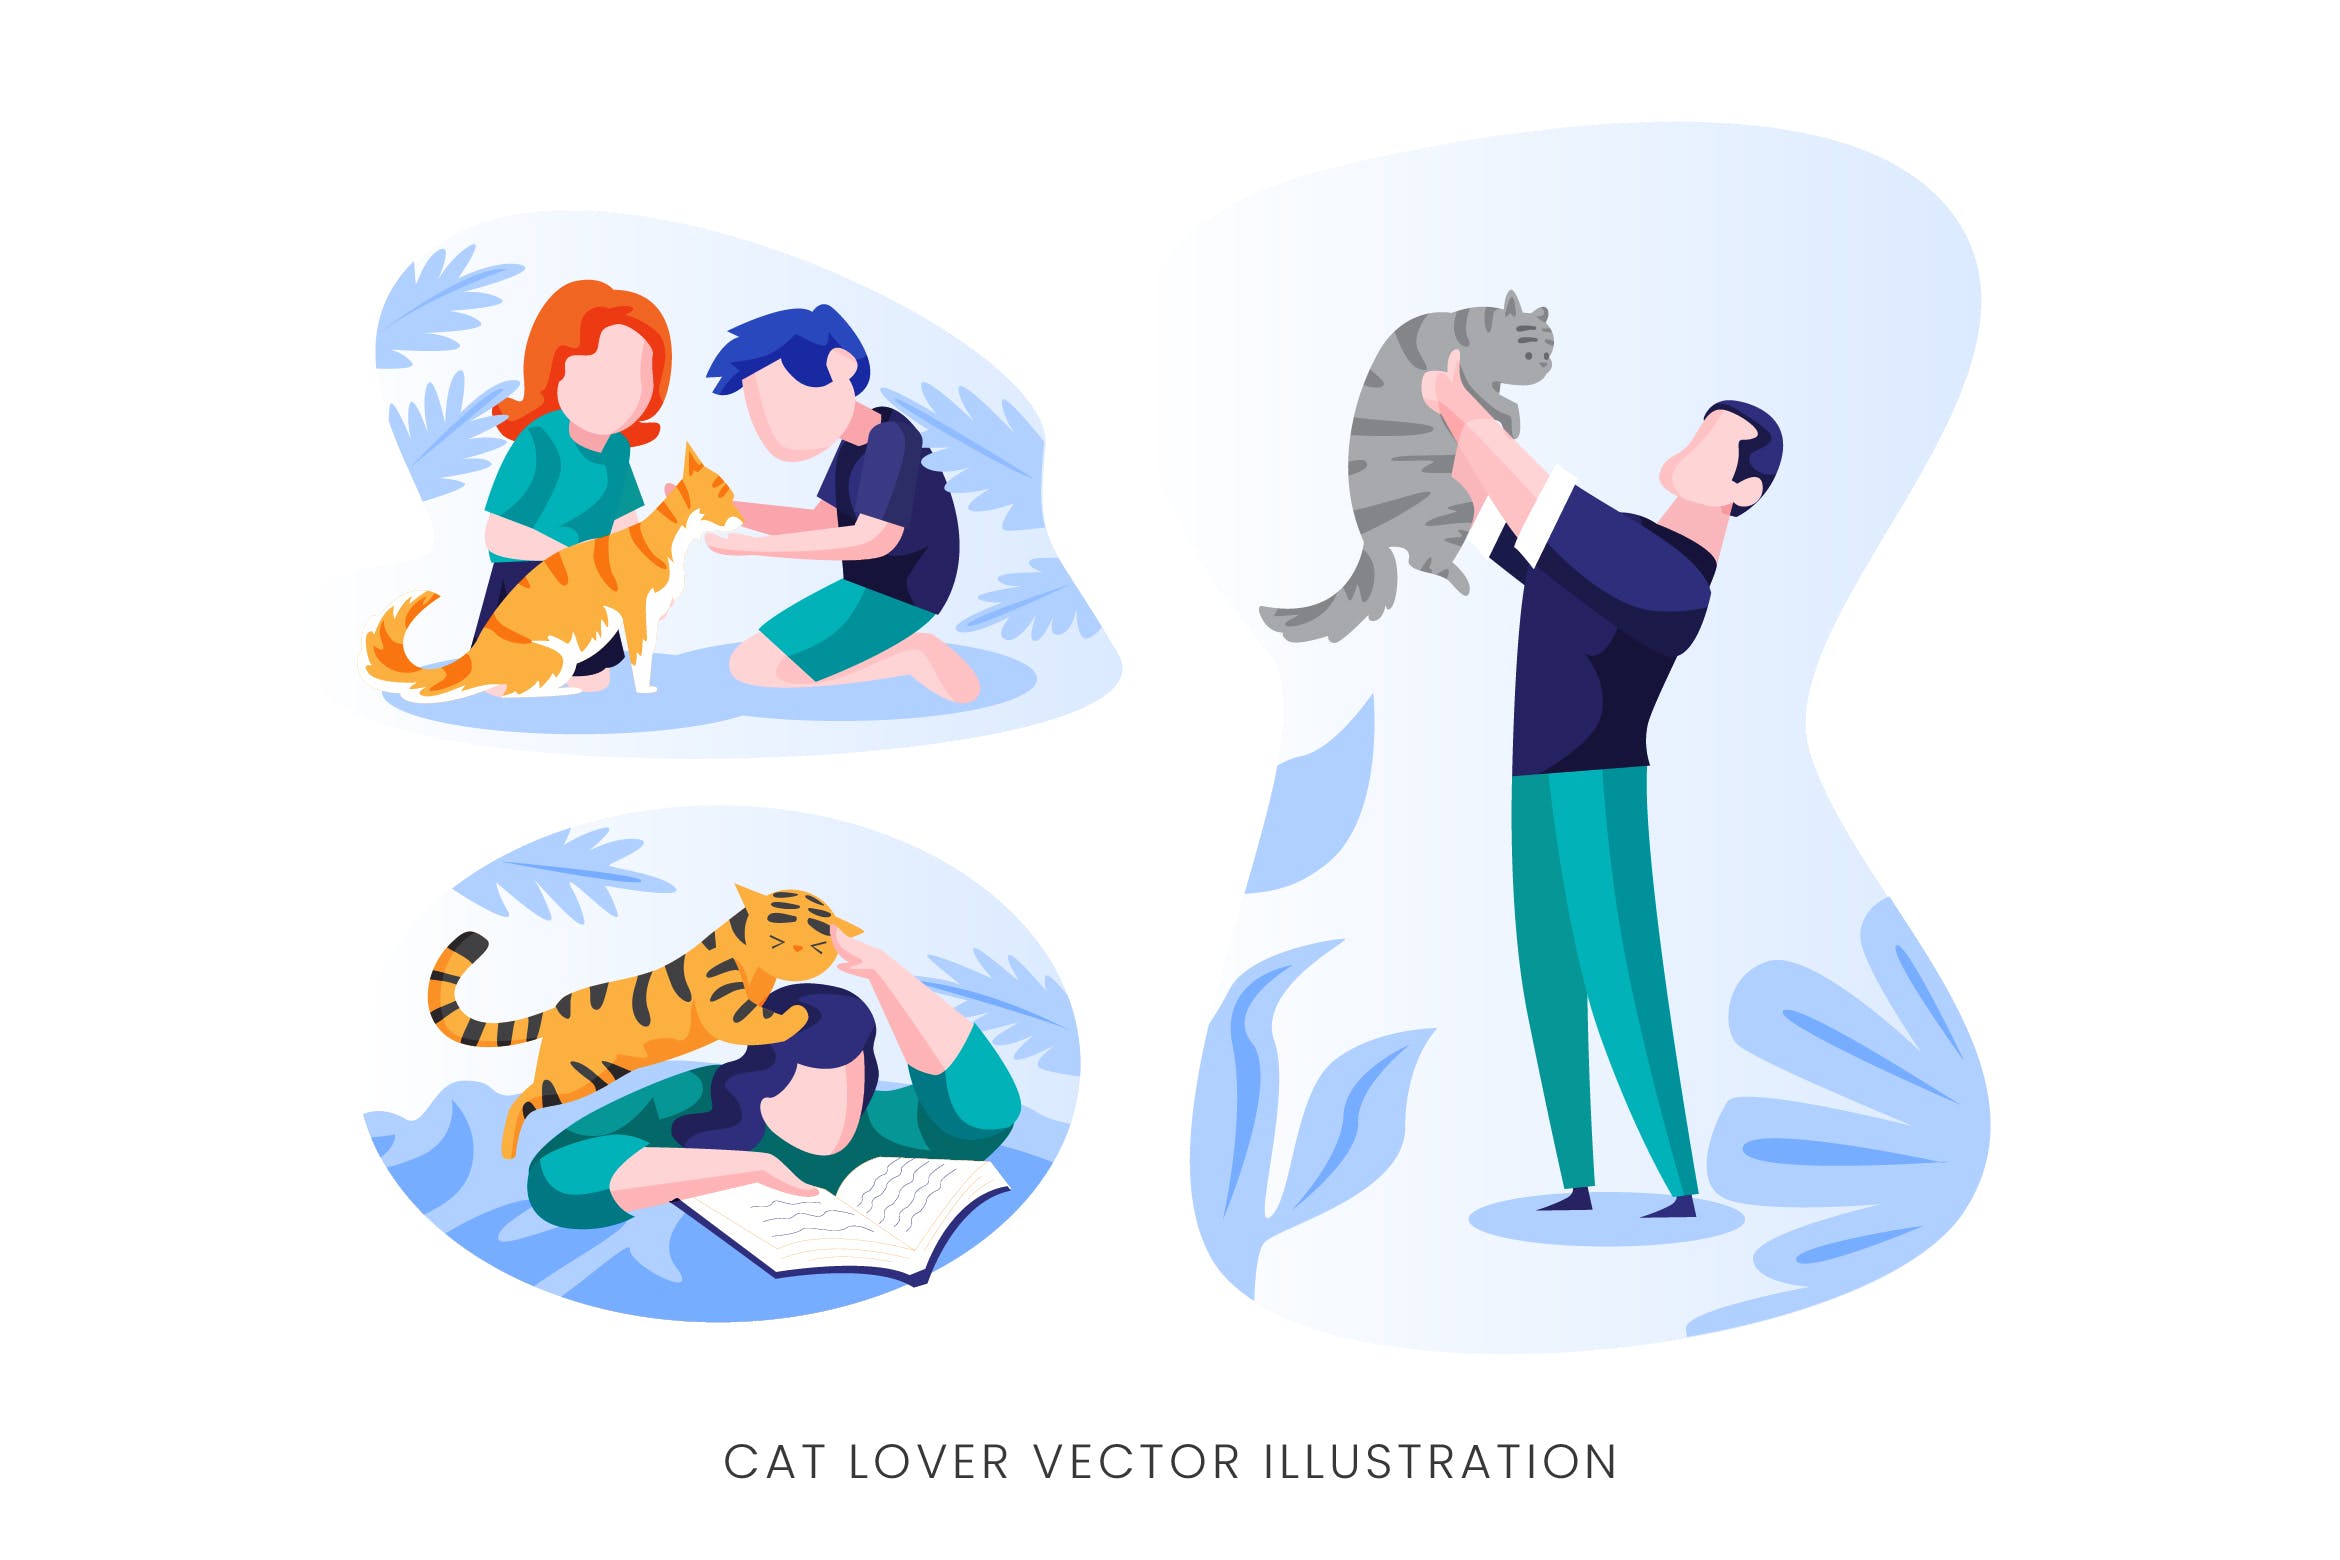 爱猫人士人物形象矢量手绘素材库精选设计素材 Cat Lover Vector Character Set插图